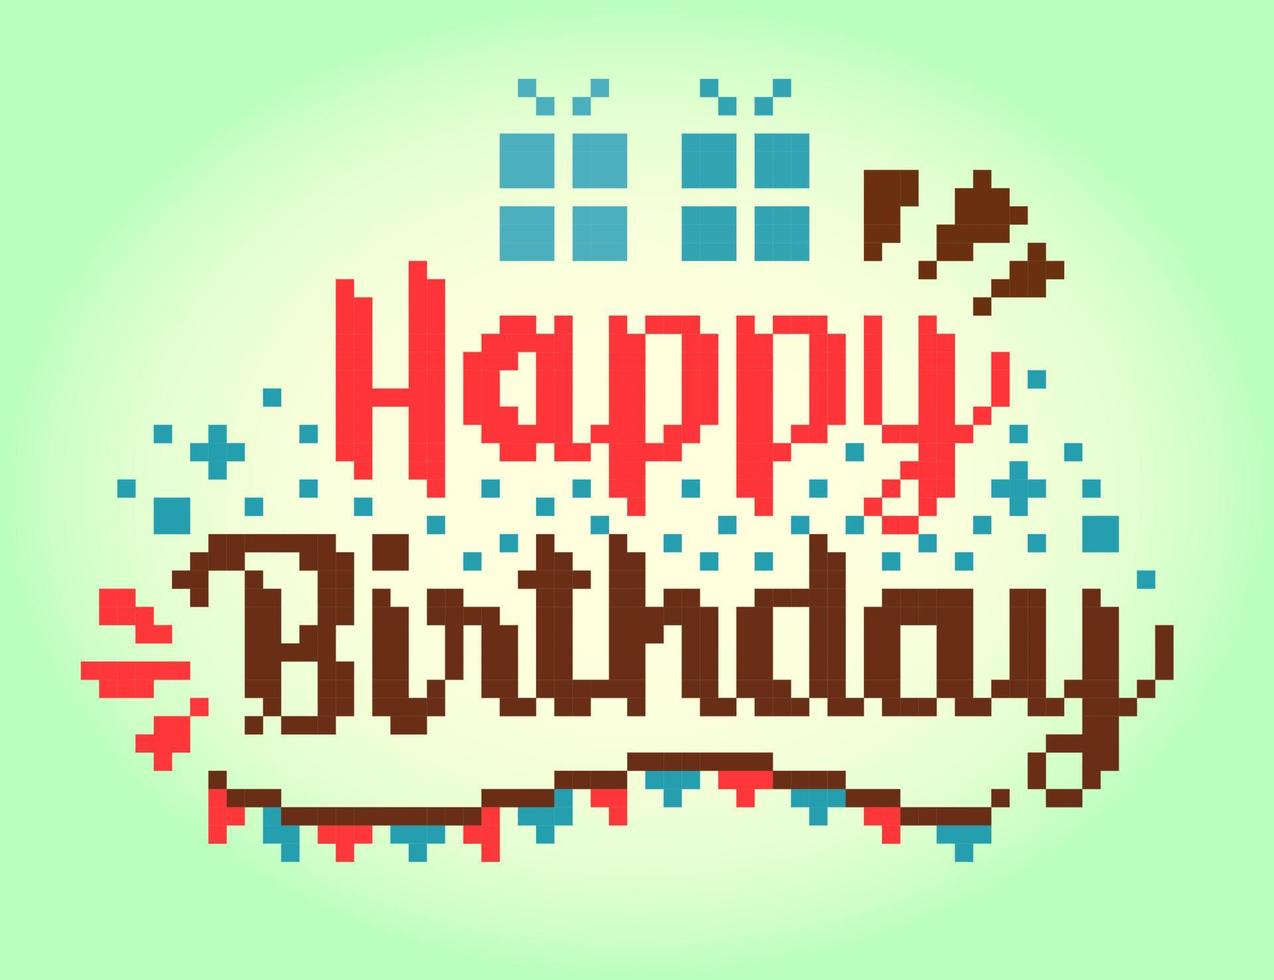 8 bits pixel do feliz aniversário cumprimento cartão. ilustração do pixel arte vetores. vetor